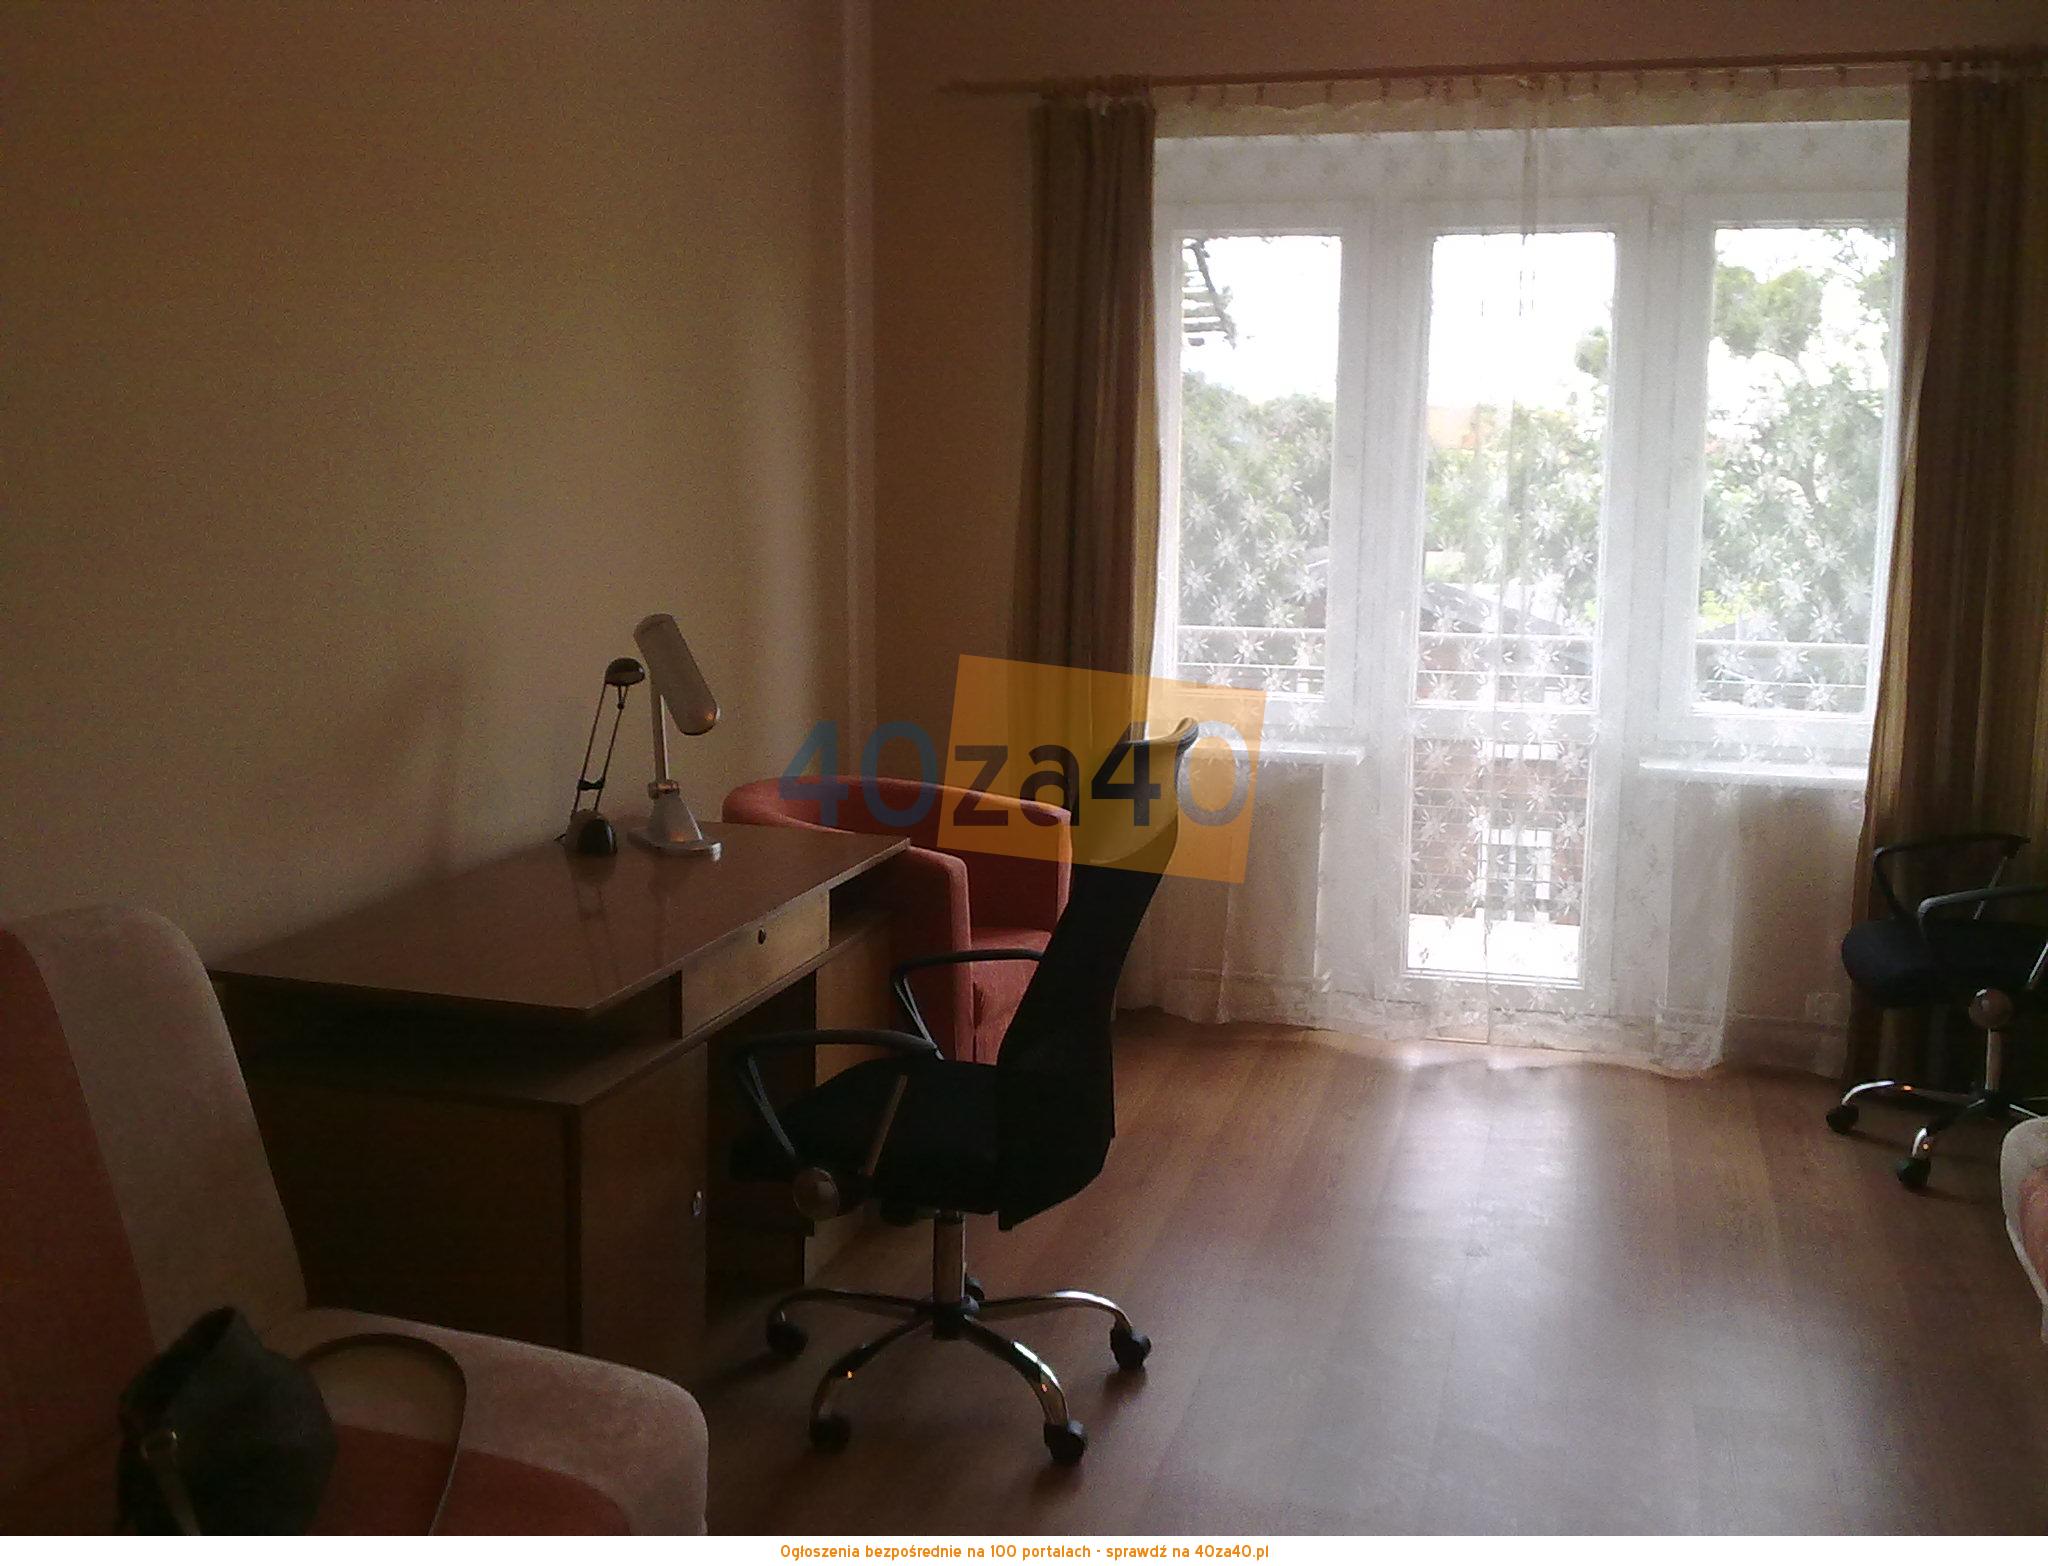 Mieszkanie do wynajęcia, pokoje: 1, cena: 600,00 PLN, Toruń, kontakt: 501391010